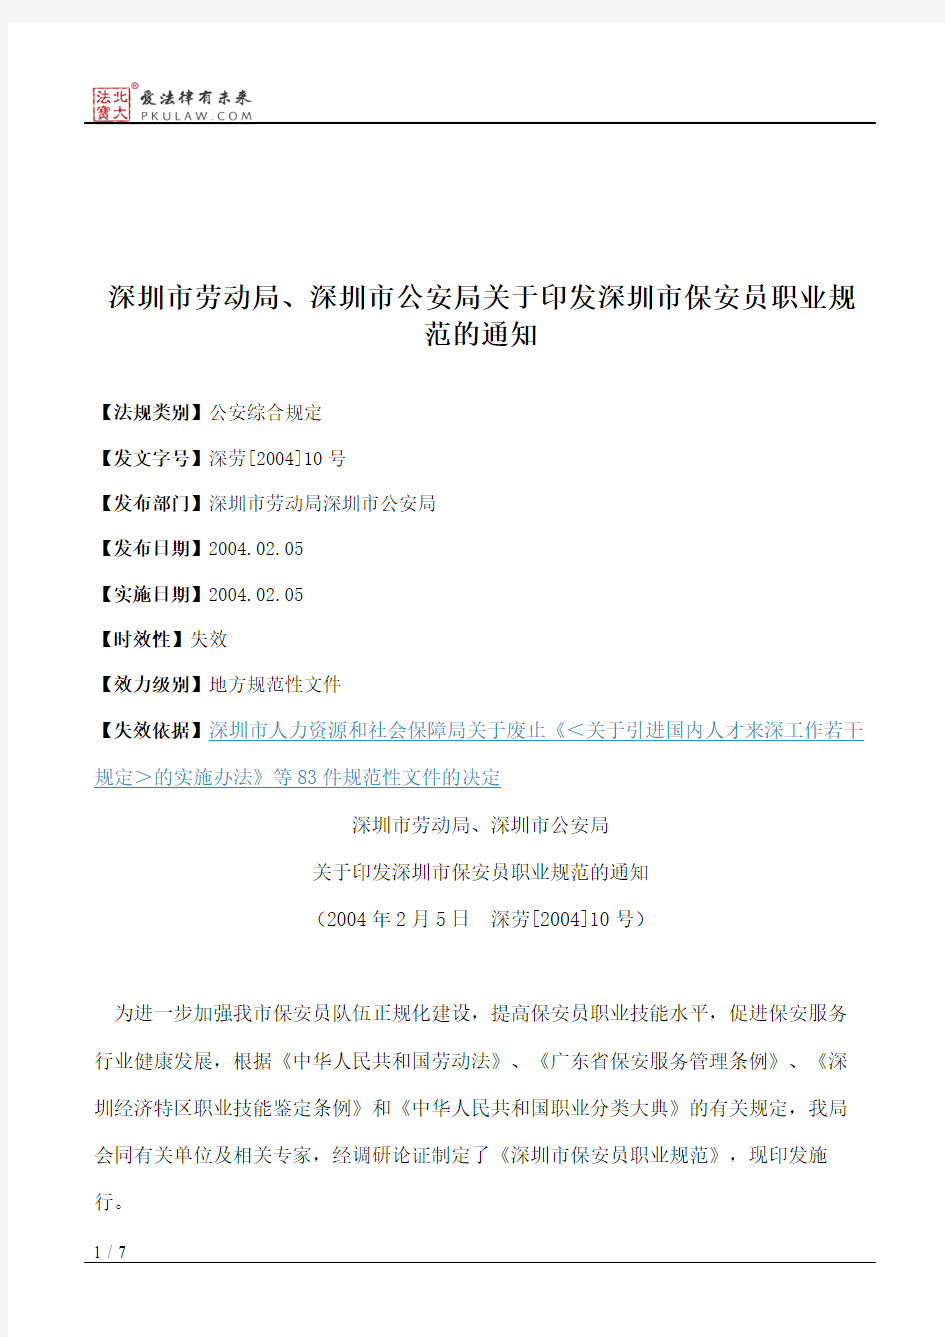 深圳市劳动局、深圳市公安局关于印发深圳市保安员职业规范的通知